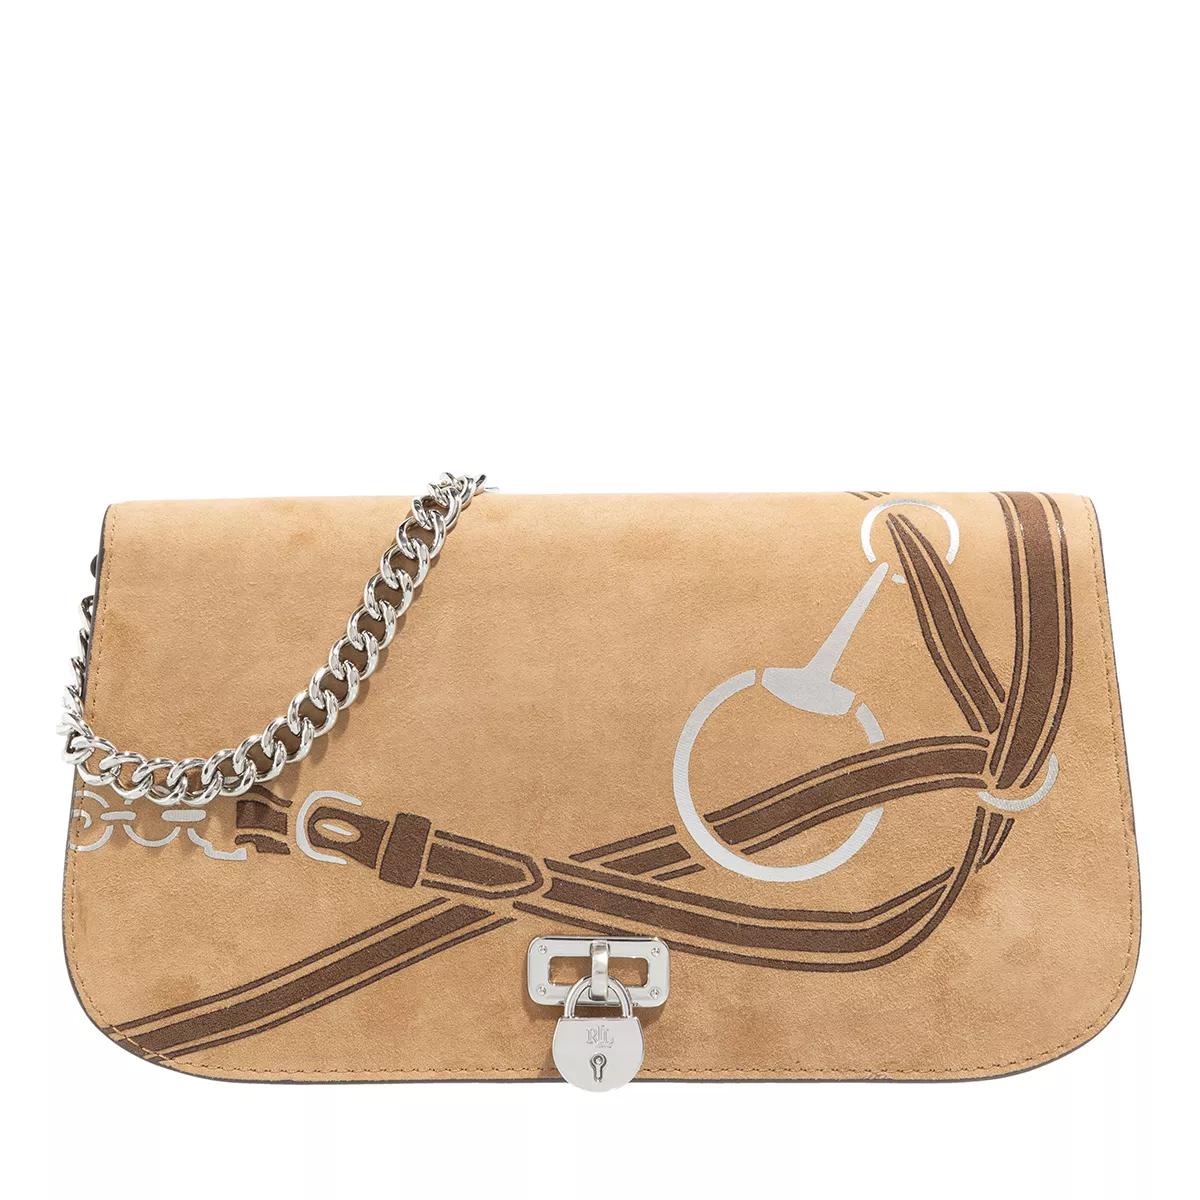 Lauren Ralph Lauren Hobo bags - Tanner Shoulder Bag Medium in bruin product